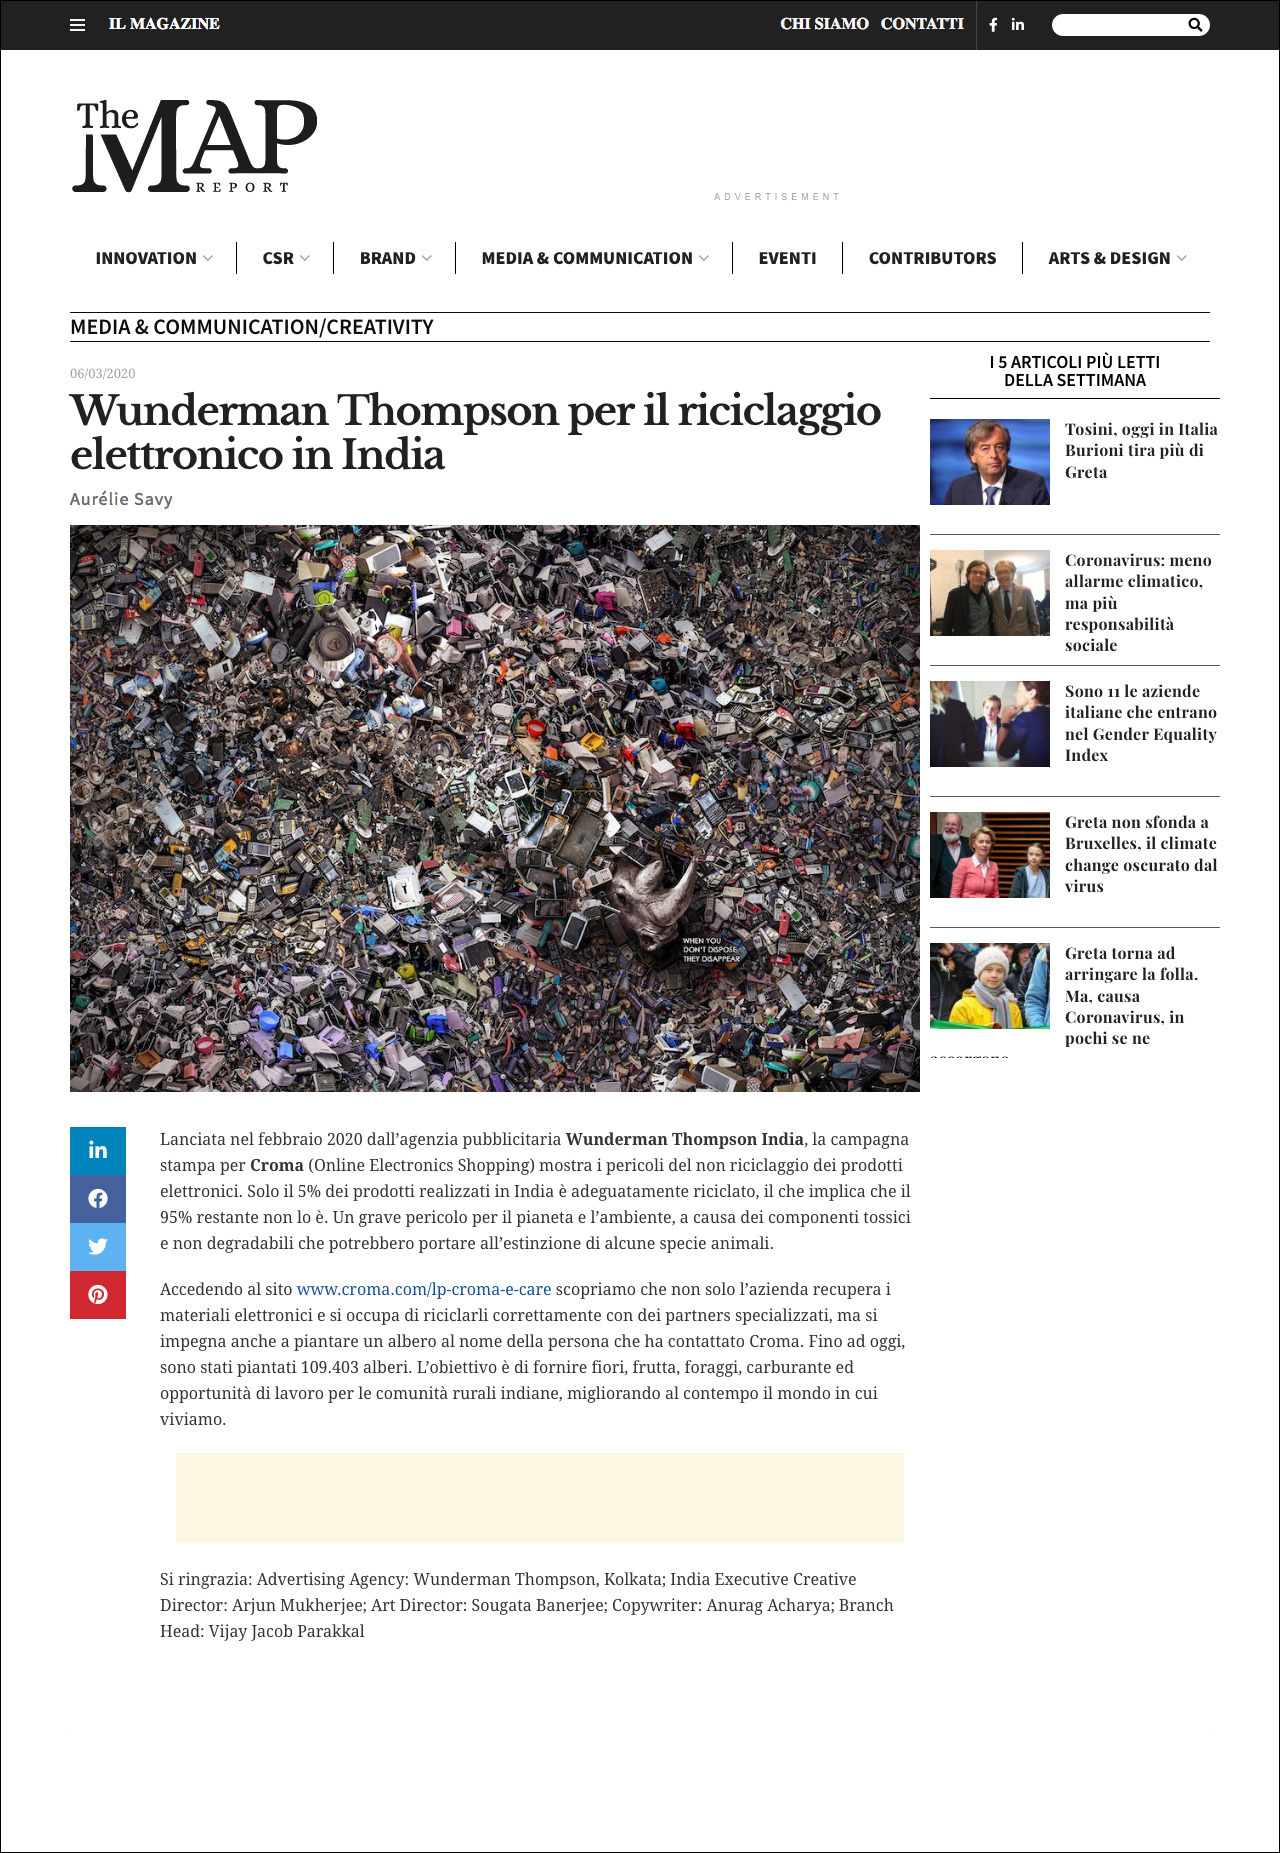 Aurélie Savy per The Map Report | Wunderman Thompson per il riciclaggio elettronico in India